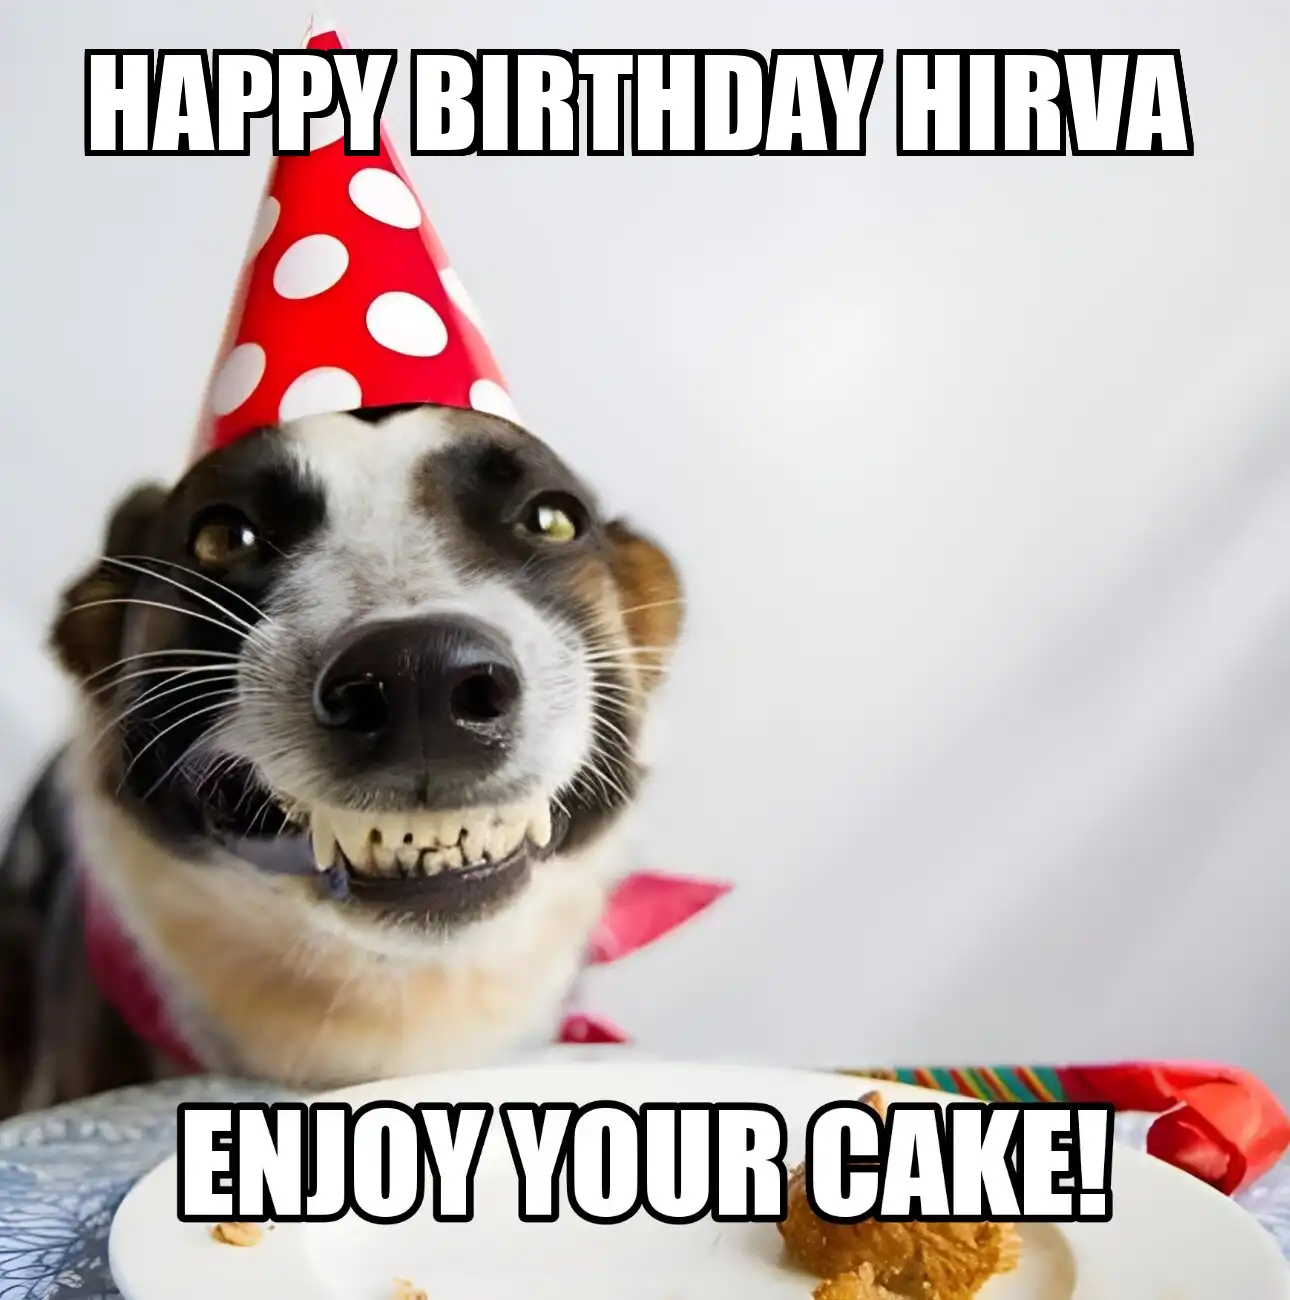 Happy Birthday Hirva Enjoy Your Cake Dog Meme